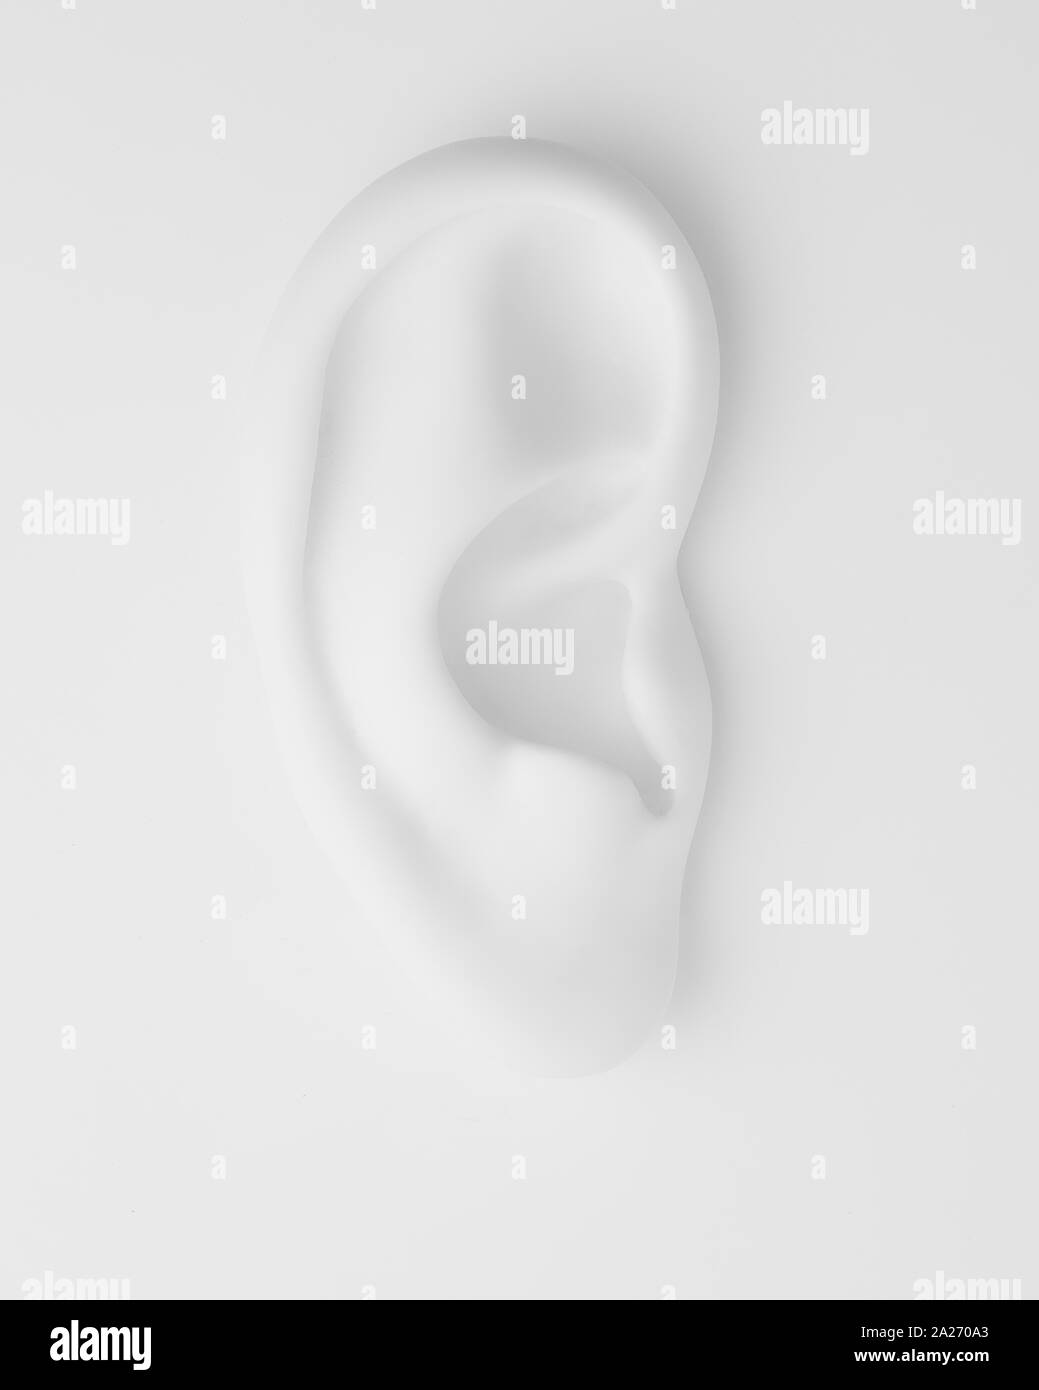 Ear weißer Hintergrund Stockfoto